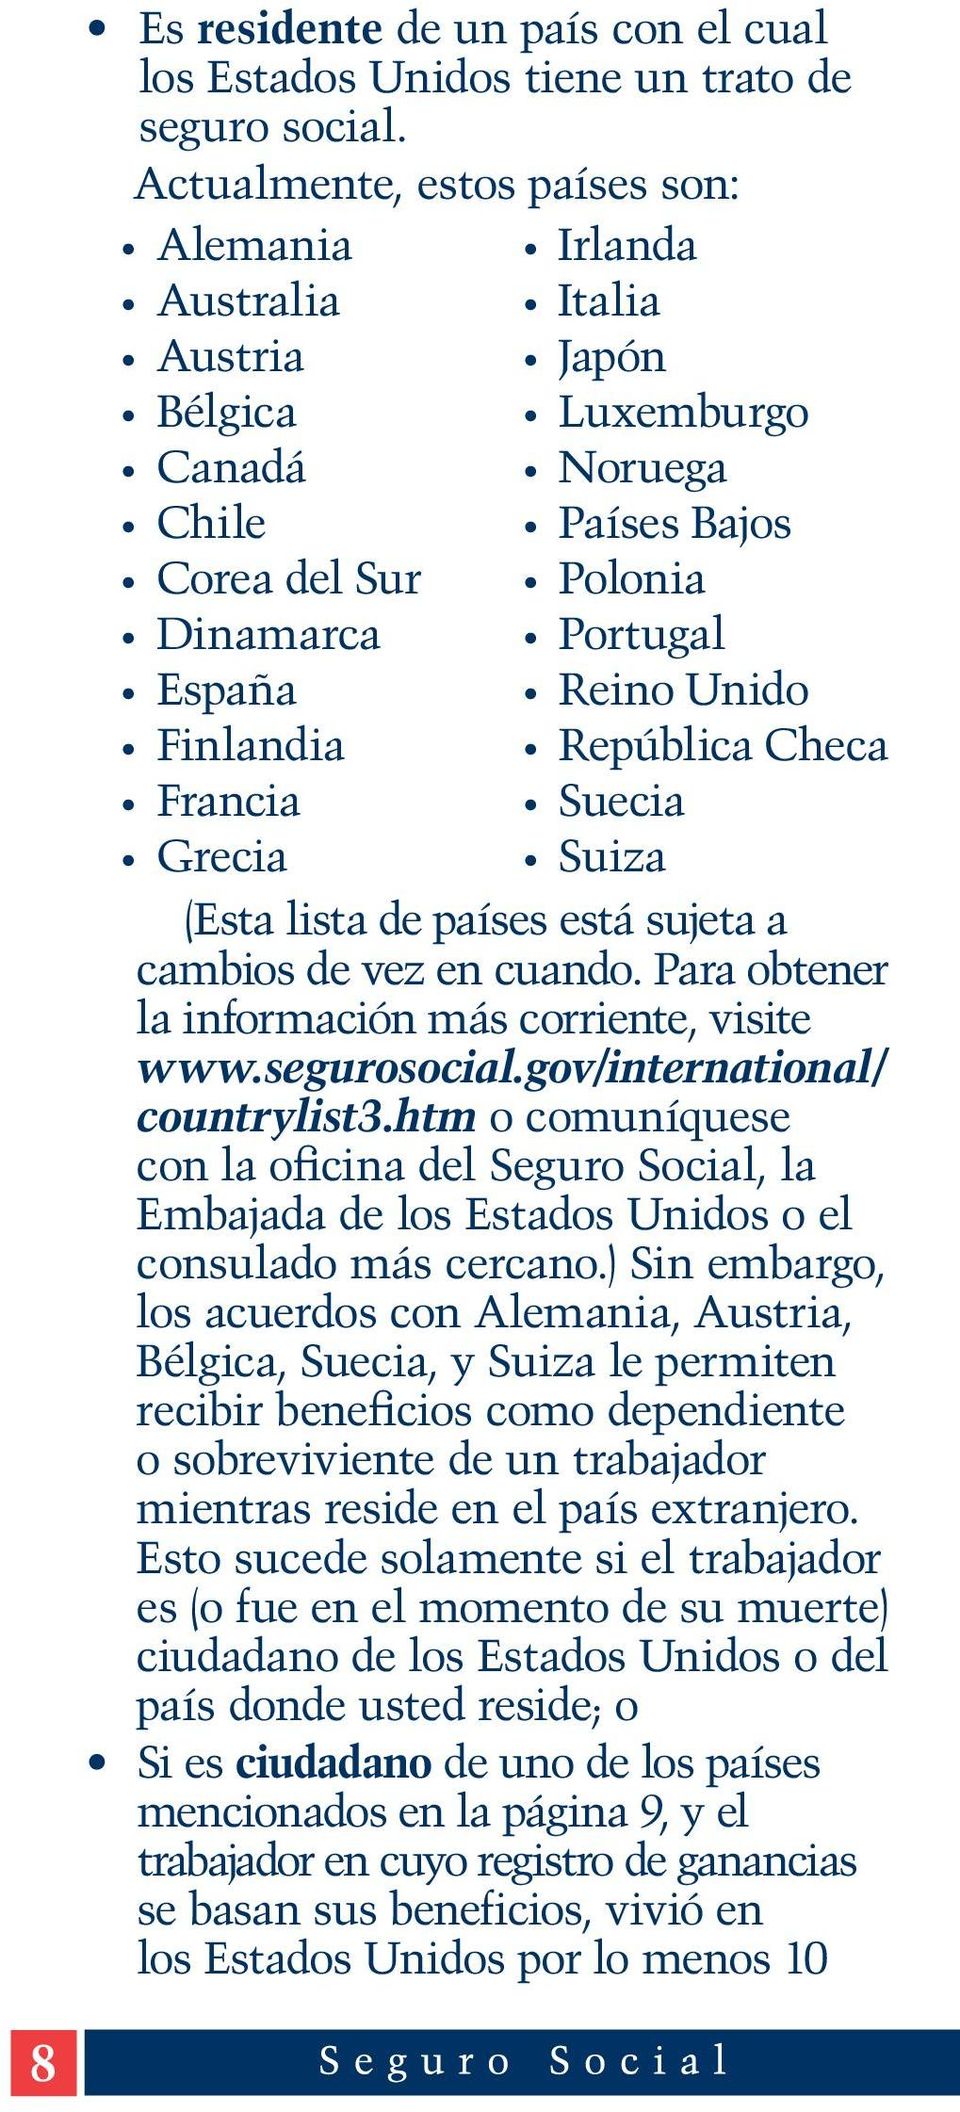 Finlandia República Checa Francia Suecia Grecia Suiza (Esta lista de países está sujeta a cambios de vez en cuando. Para obtener la información más corriente, visite www.segurosocial.